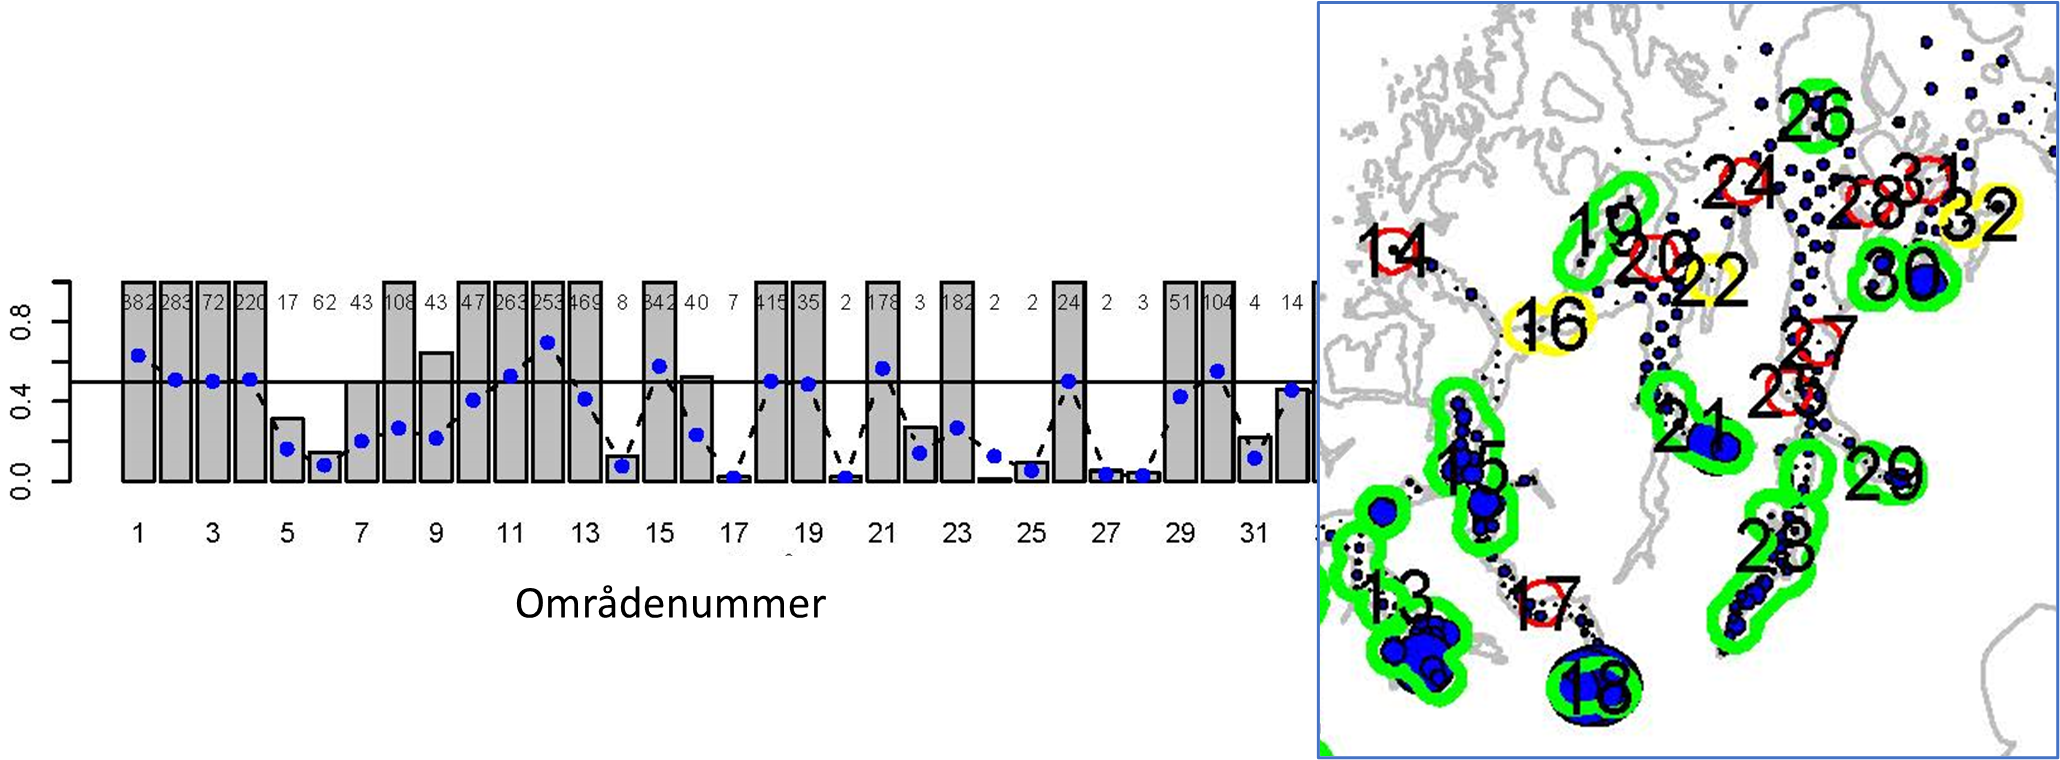 Figur 28 : Resultat fra gytefeltkartleggingen i 2021. Stolpediagrammet til venstre angir en statistisk sannsynlighet for at det undersøkte området er et gytefelt, og tallene øverst i stolpediagrammet angir antall egg observert. Kartet til høyre illustrerer de ulike områdene på kart, omkranset av farge som indikerer lav (rød), middels (gul) eller høy (grønn) sannsynlighet for at området er et gytefelt. Gytefelt Storfjorden har nummer 23 i diagram og kart.